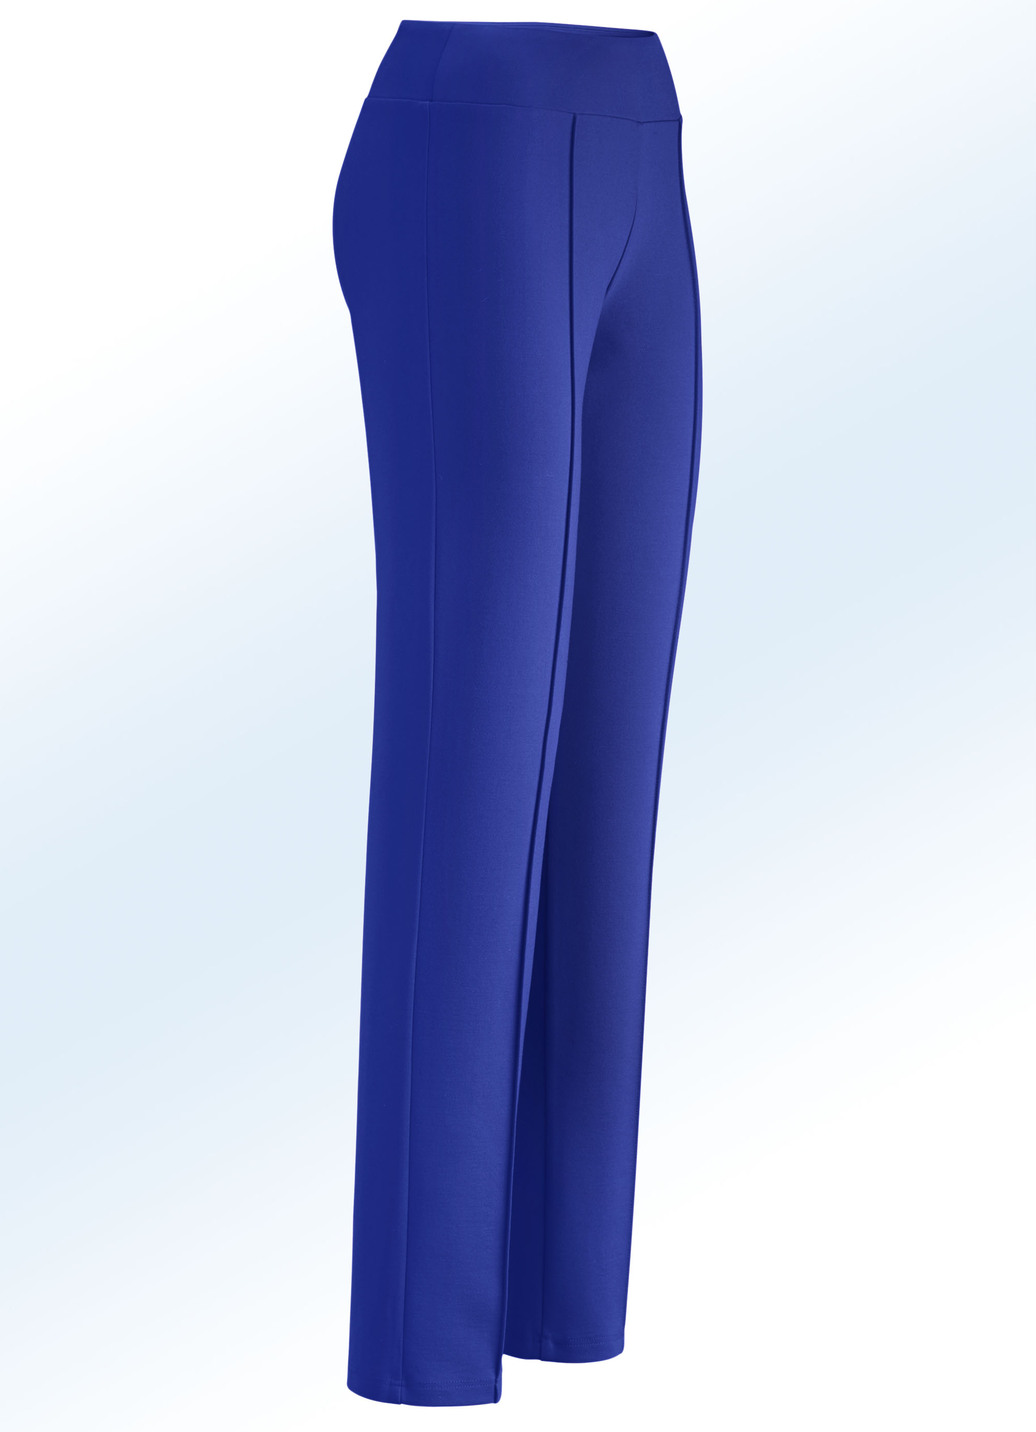 Jerseyhose mit höherem, elastischem Formbund, Royalblau, Größe 50 von BADER